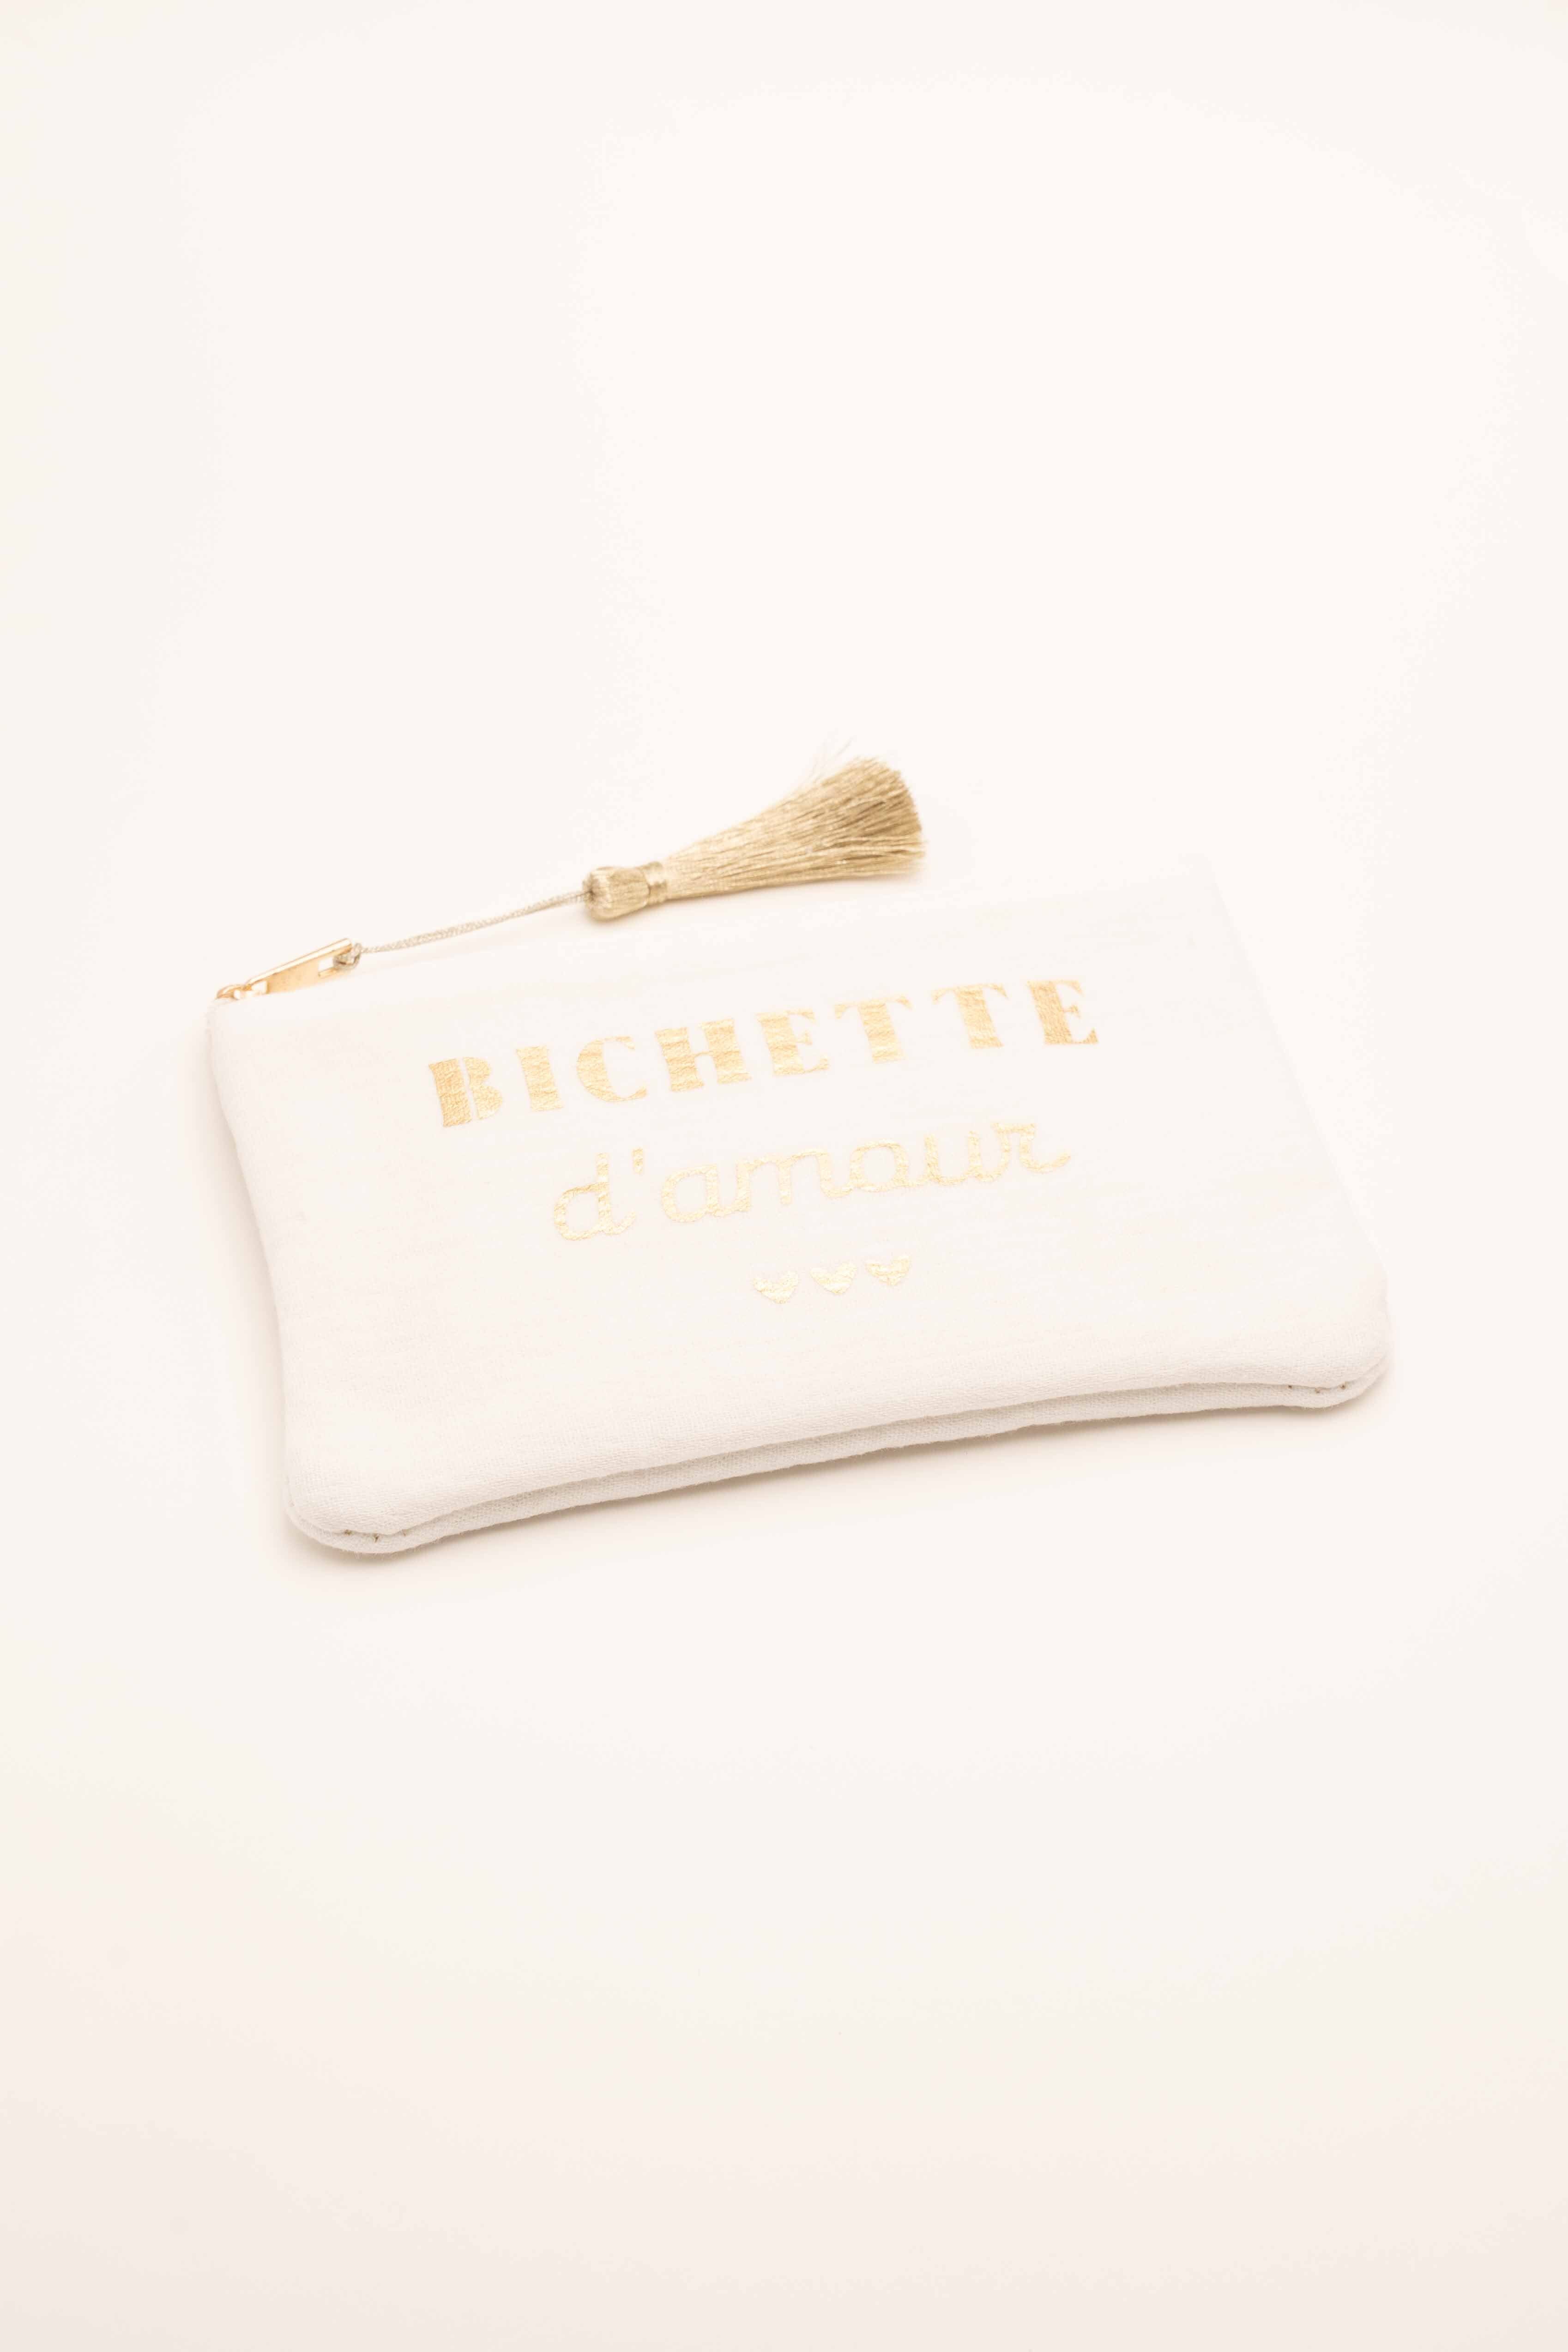 Pochette Bohm Paris - Bichette d'amour Pochette Bohm Paris Blanc textile 